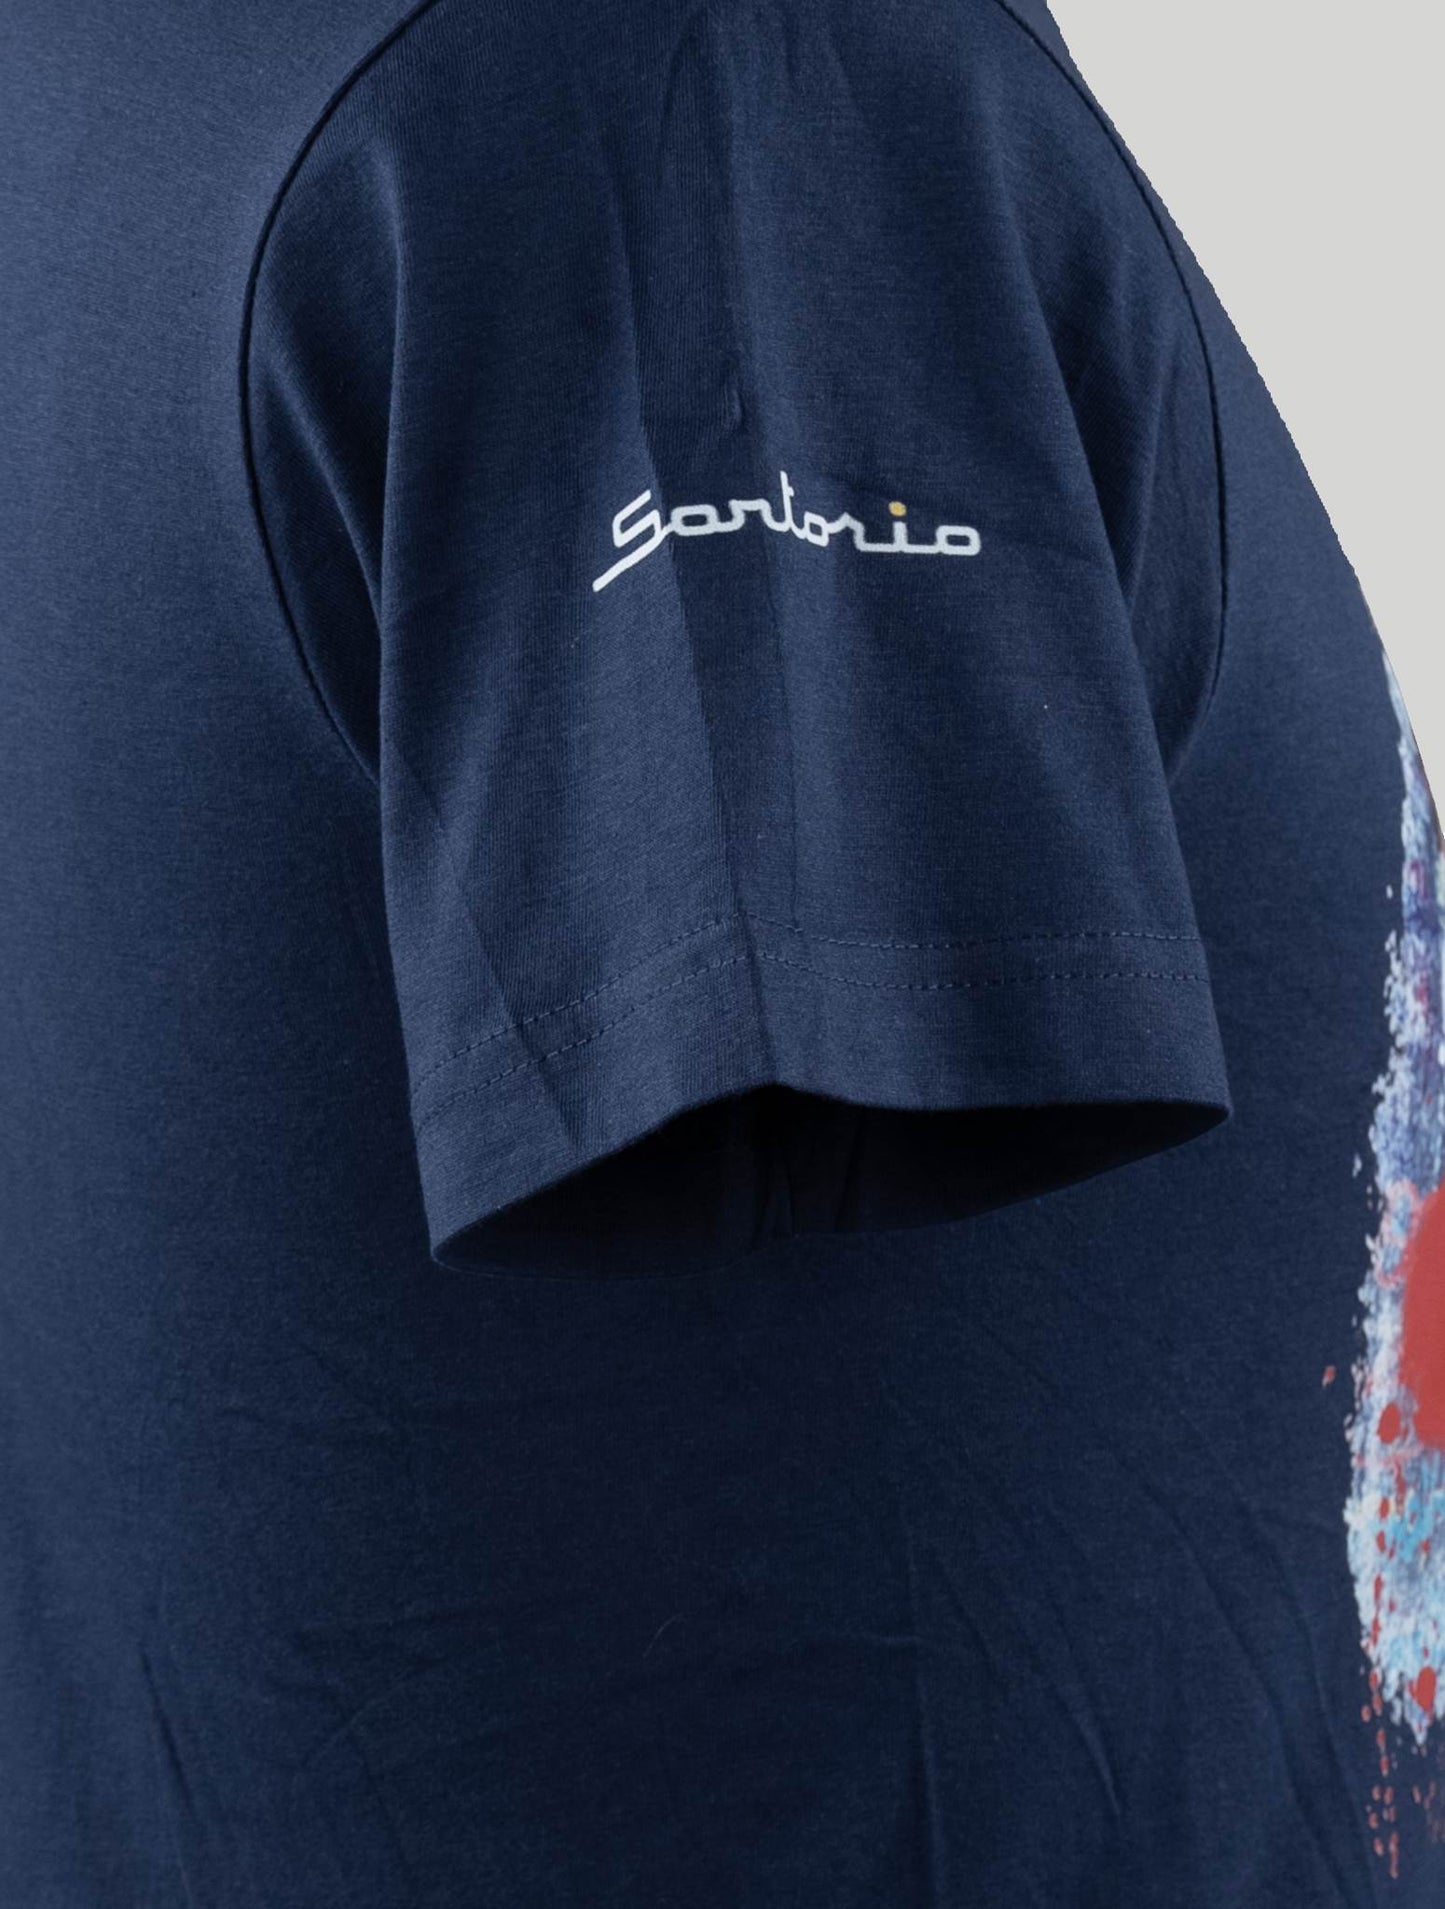 Sartorio Napoli Pull en coton bleu édition spéciale